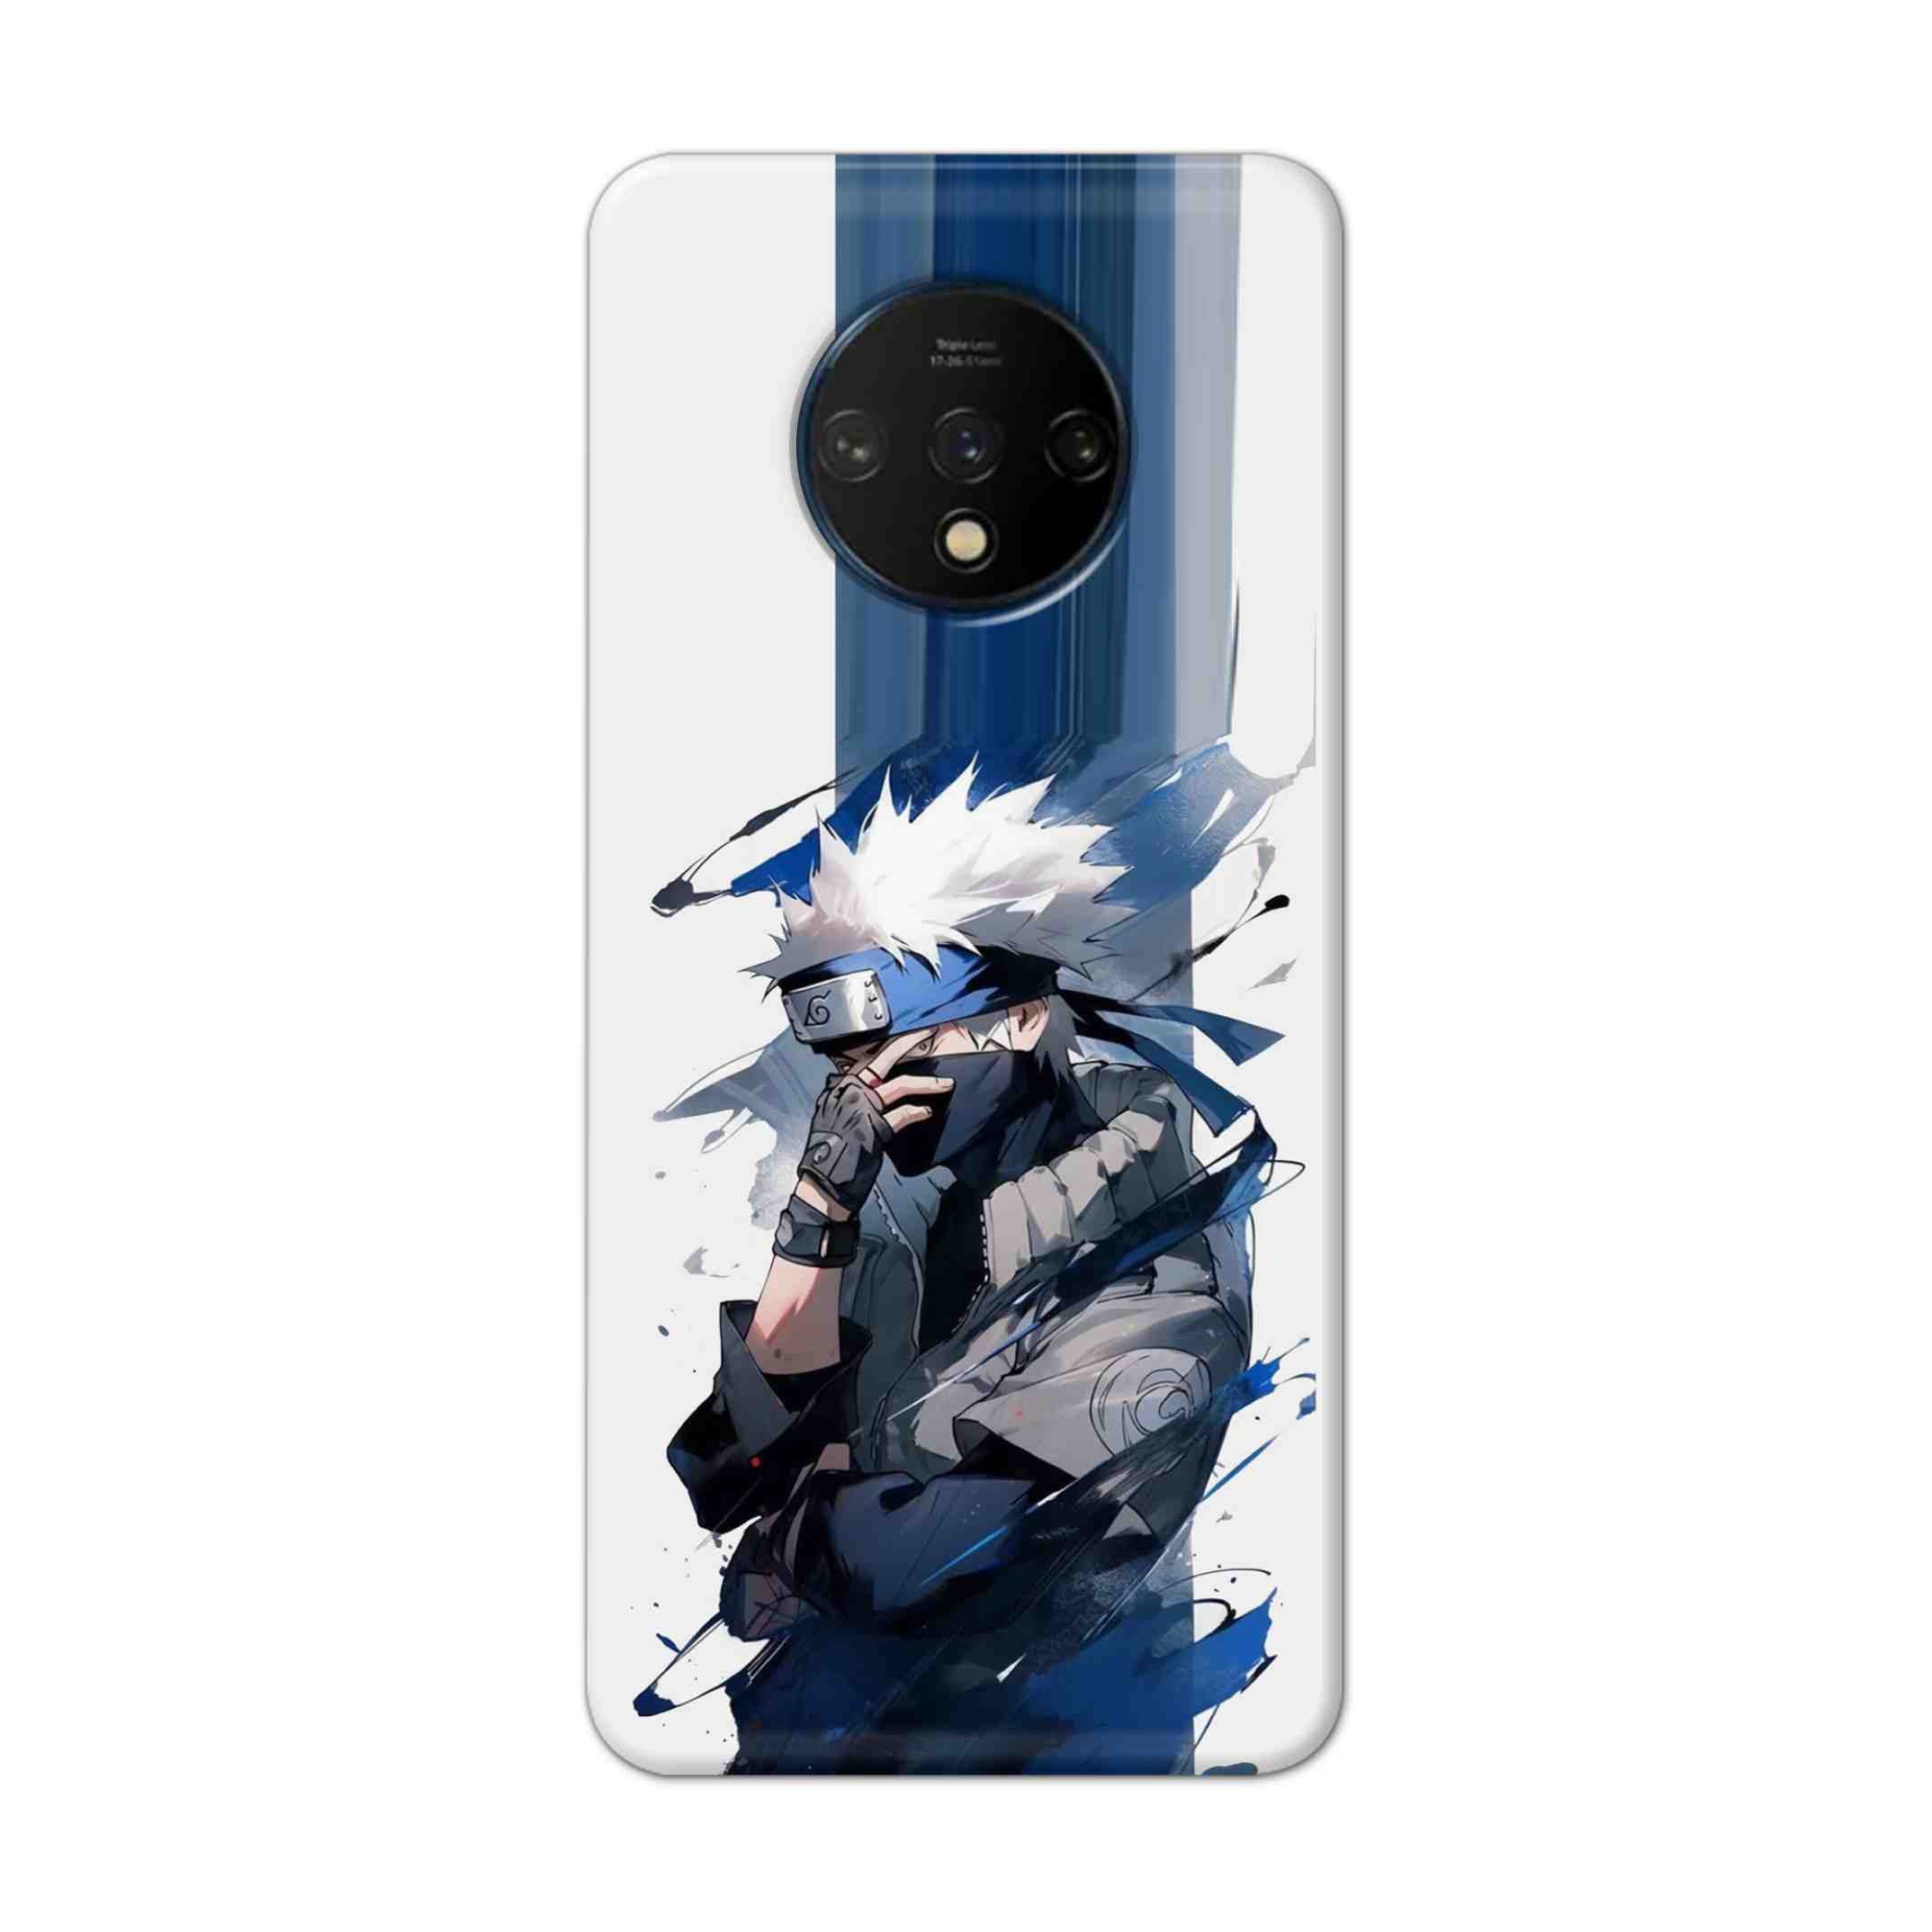 Buy Kakachi Hard Back Mobile Phone Case Cover For OnePlus 7T Online